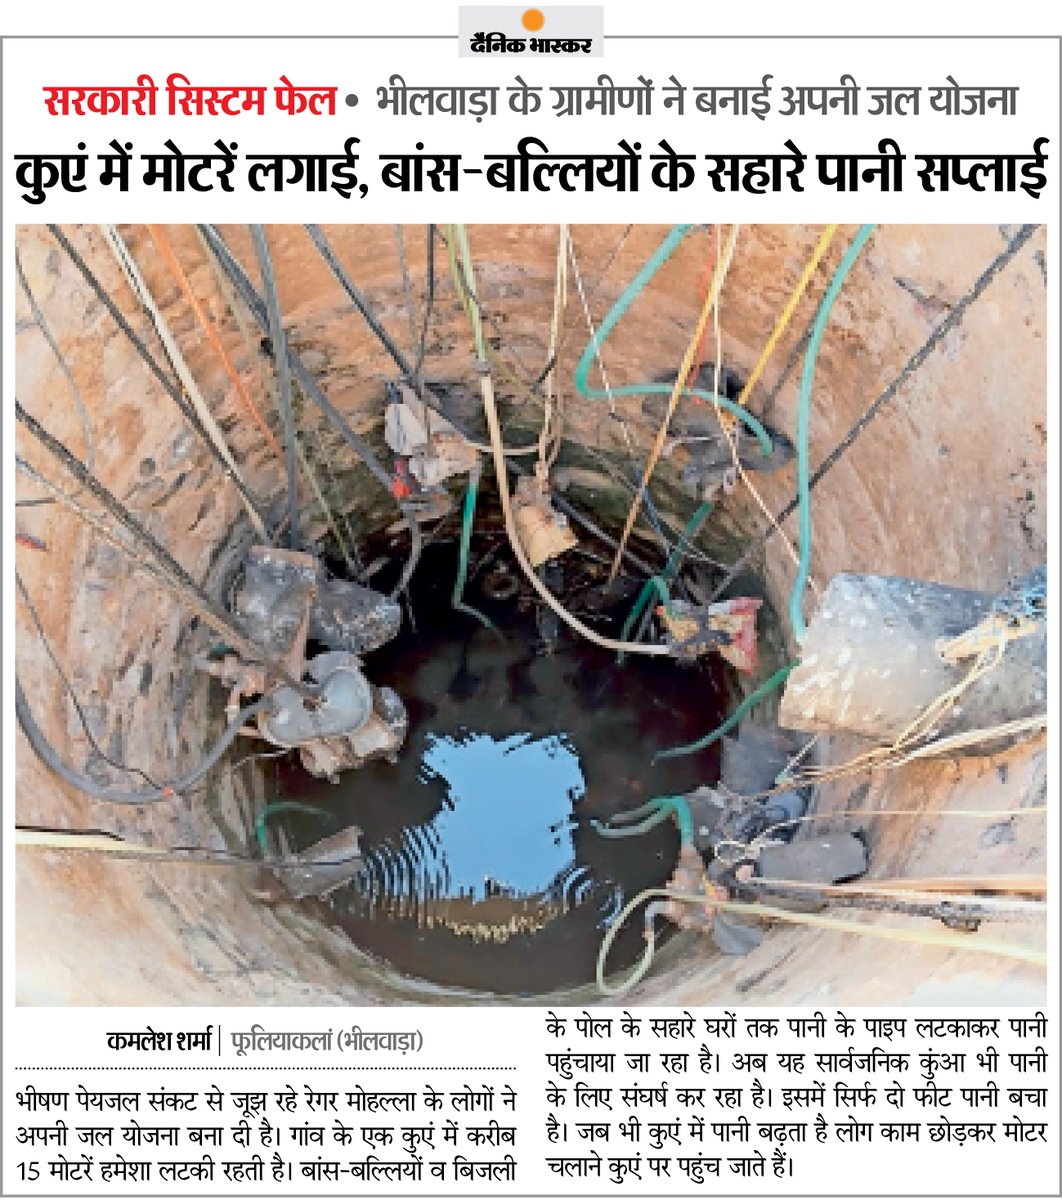 भीलवाड़ा के गांव में भारी जल संकट : गांव की बड़ी आबादी पानी के लिए इसी कुए पर निर्भर, बांस-बल्लियों व बिजली पोल के सहारे घरों में पहुंच रहा पानी
#Rajasthan #Bhilwara 

अधिक खबरें और ई-पेपर पढ़ने के लिए दैनिक भास्कर ऐप इंस्टॉल करें - dainik-b.in/mjwzCSxDdsb